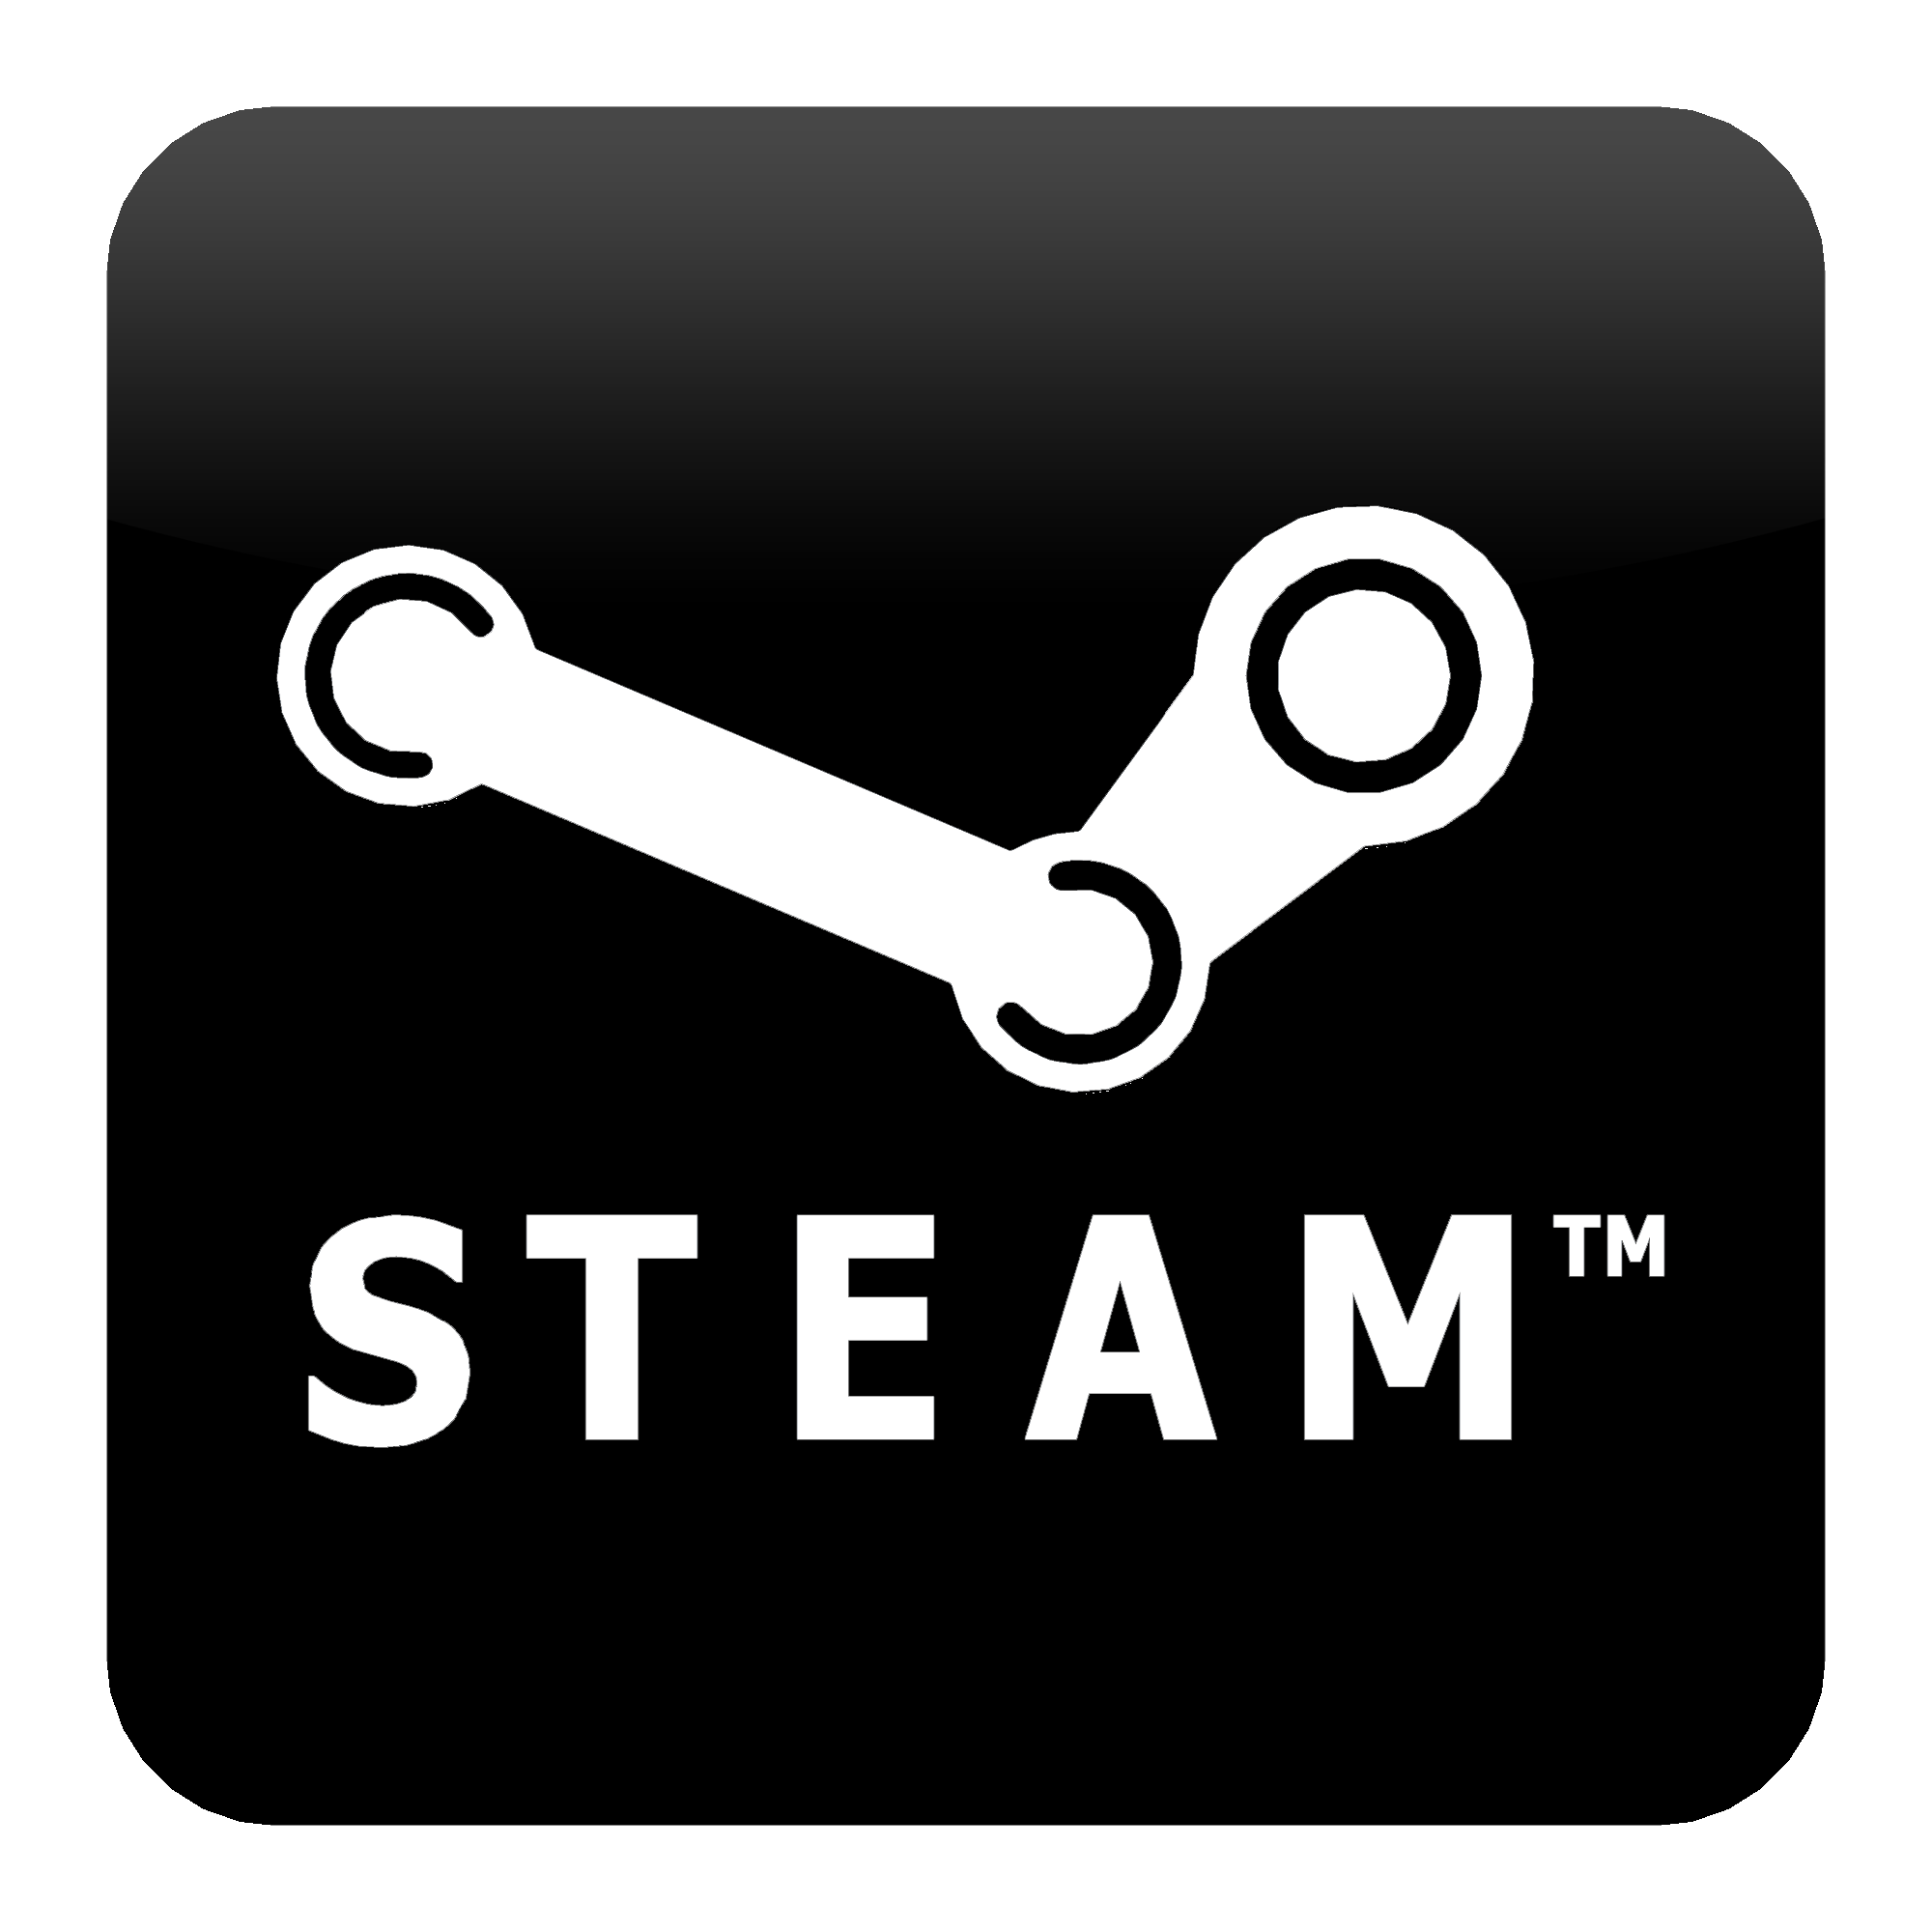 Утечка дат проведения Летней Распродажи Steam